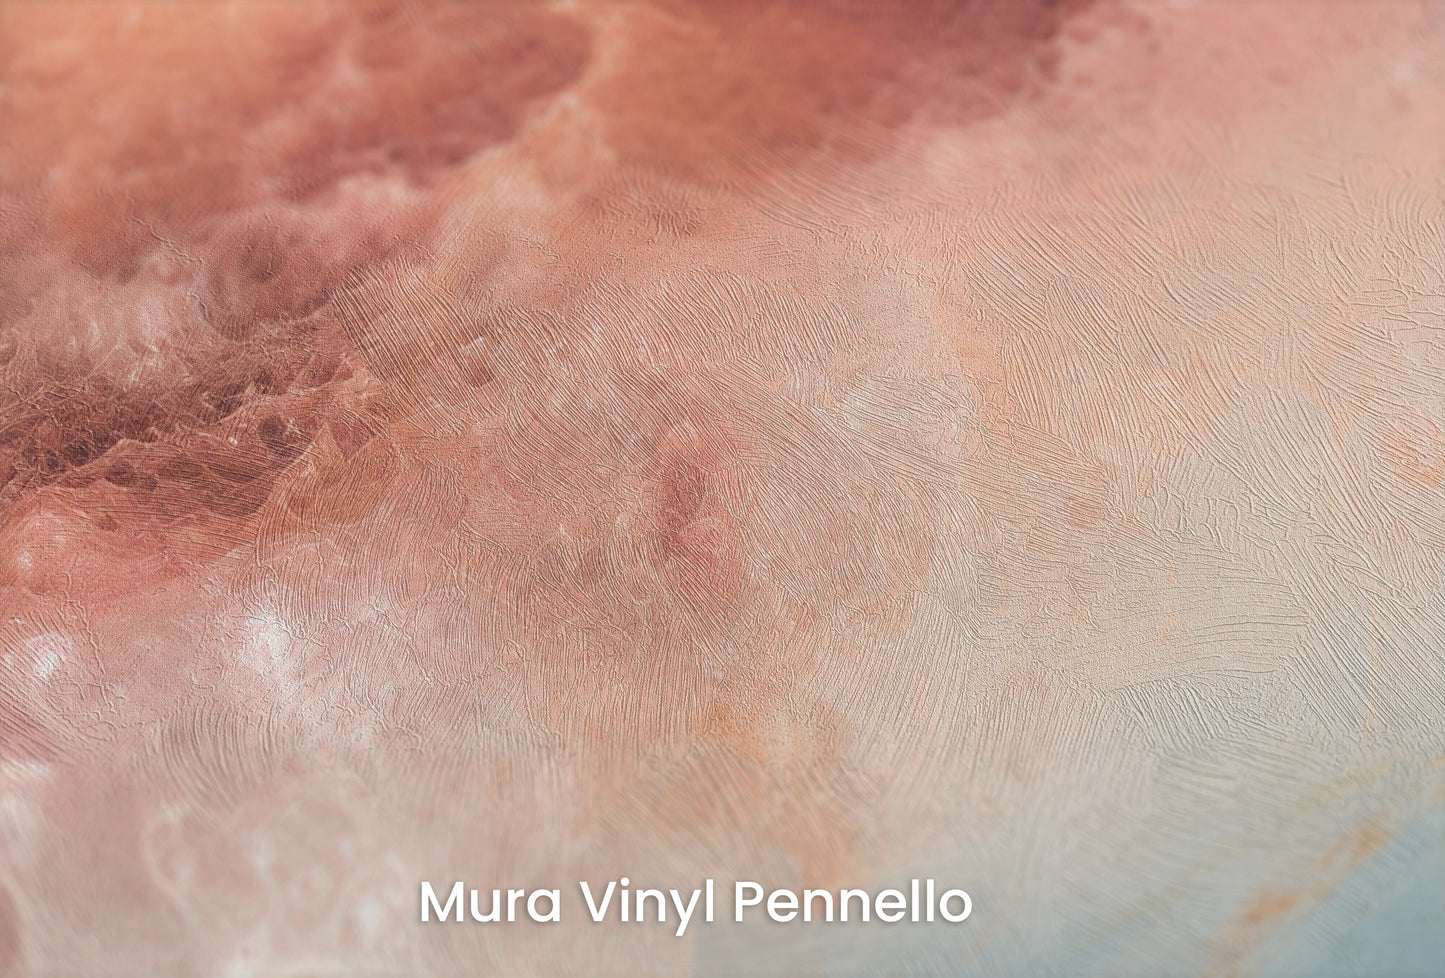 Zbliżenie na artystyczną fototapetę o nazwie Lunar Surface #2 na podłożu Mura Vinyl Pennello - faktura pociągnięć pędzla malarskiego.